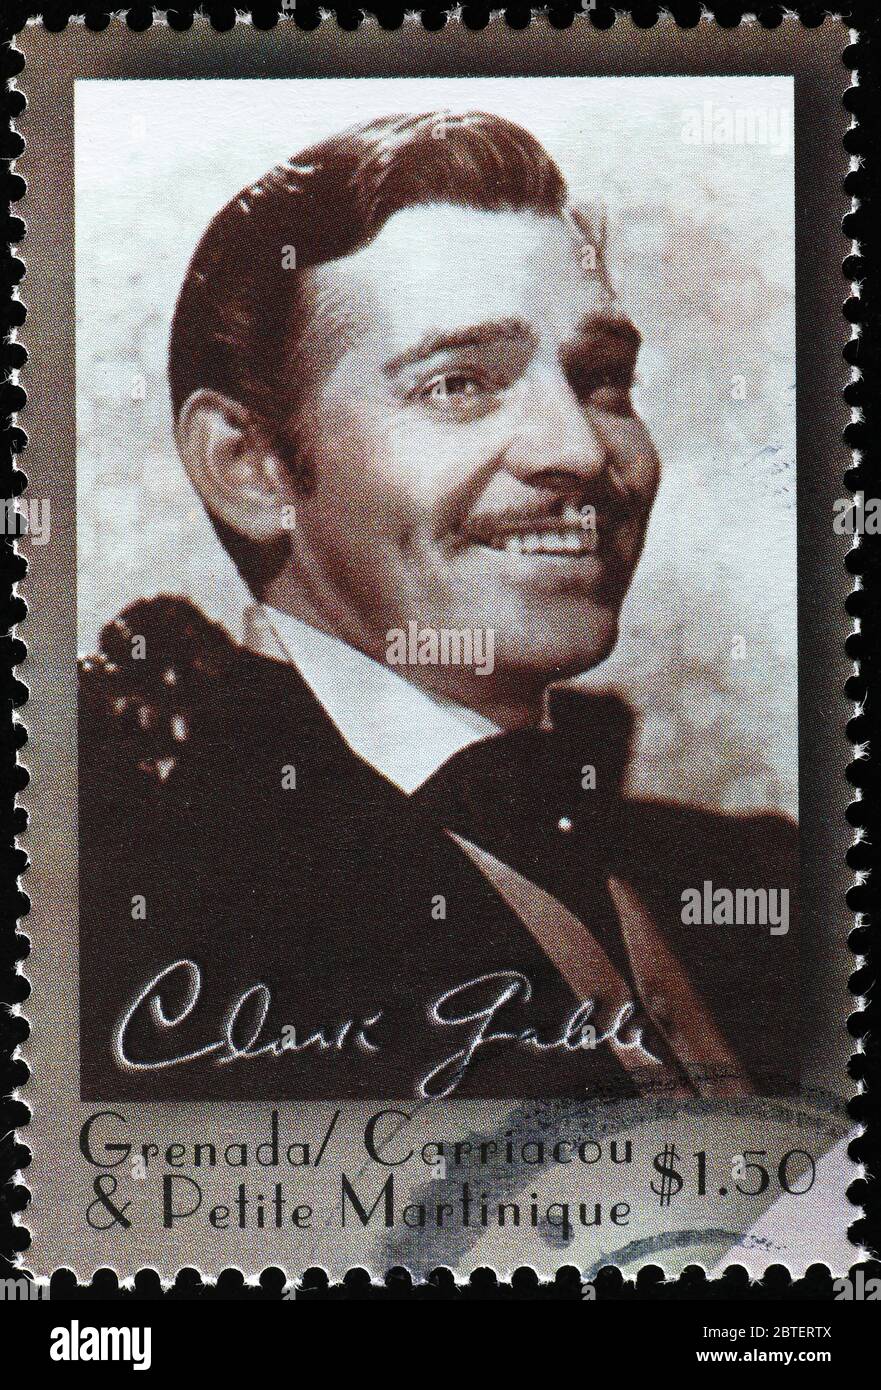 Porträt von Clark Gable lächelnd auf Briefmarke Stockfoto